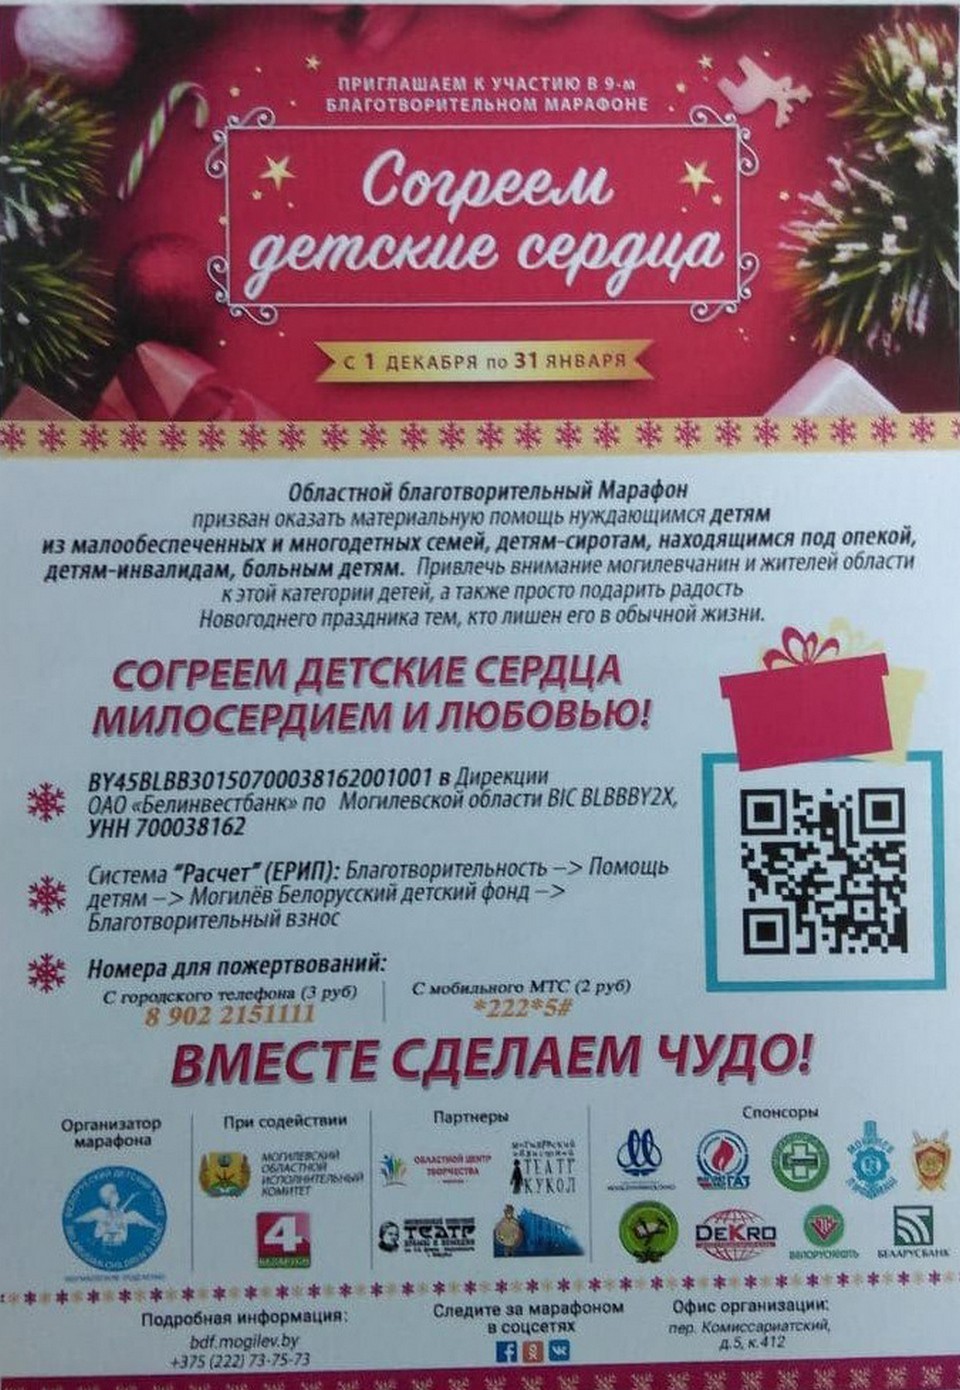 В Могилевской области 1 декабря стартует благотворительный марафон «Согреем детские сердца»